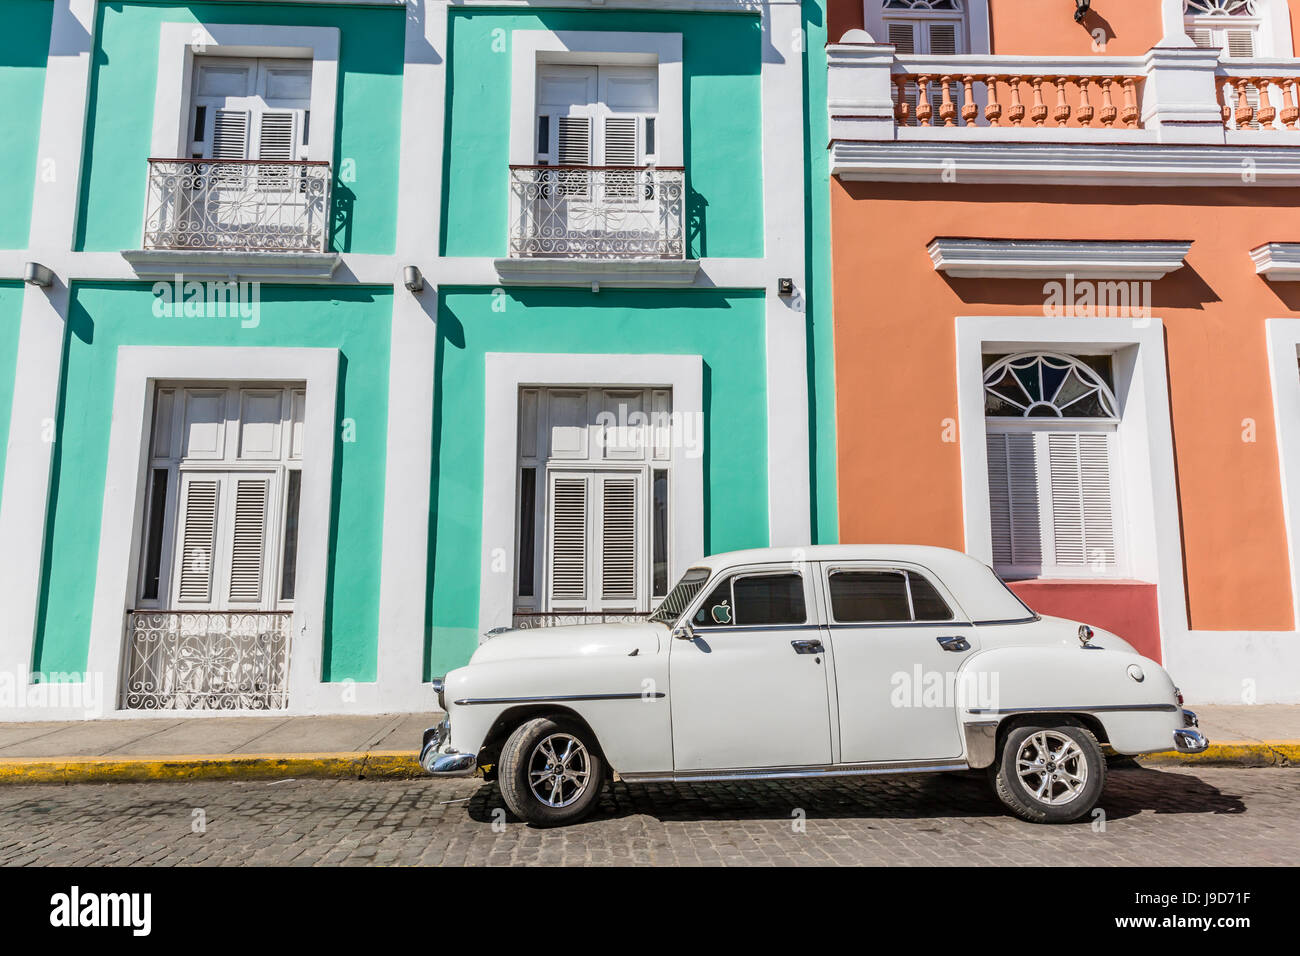 Classic 1950 Plymouth taxi, connu localement comme almendrones dans la ville de Cienfuegos, Cuba, Antilles, Caraïbes Banque D'Images